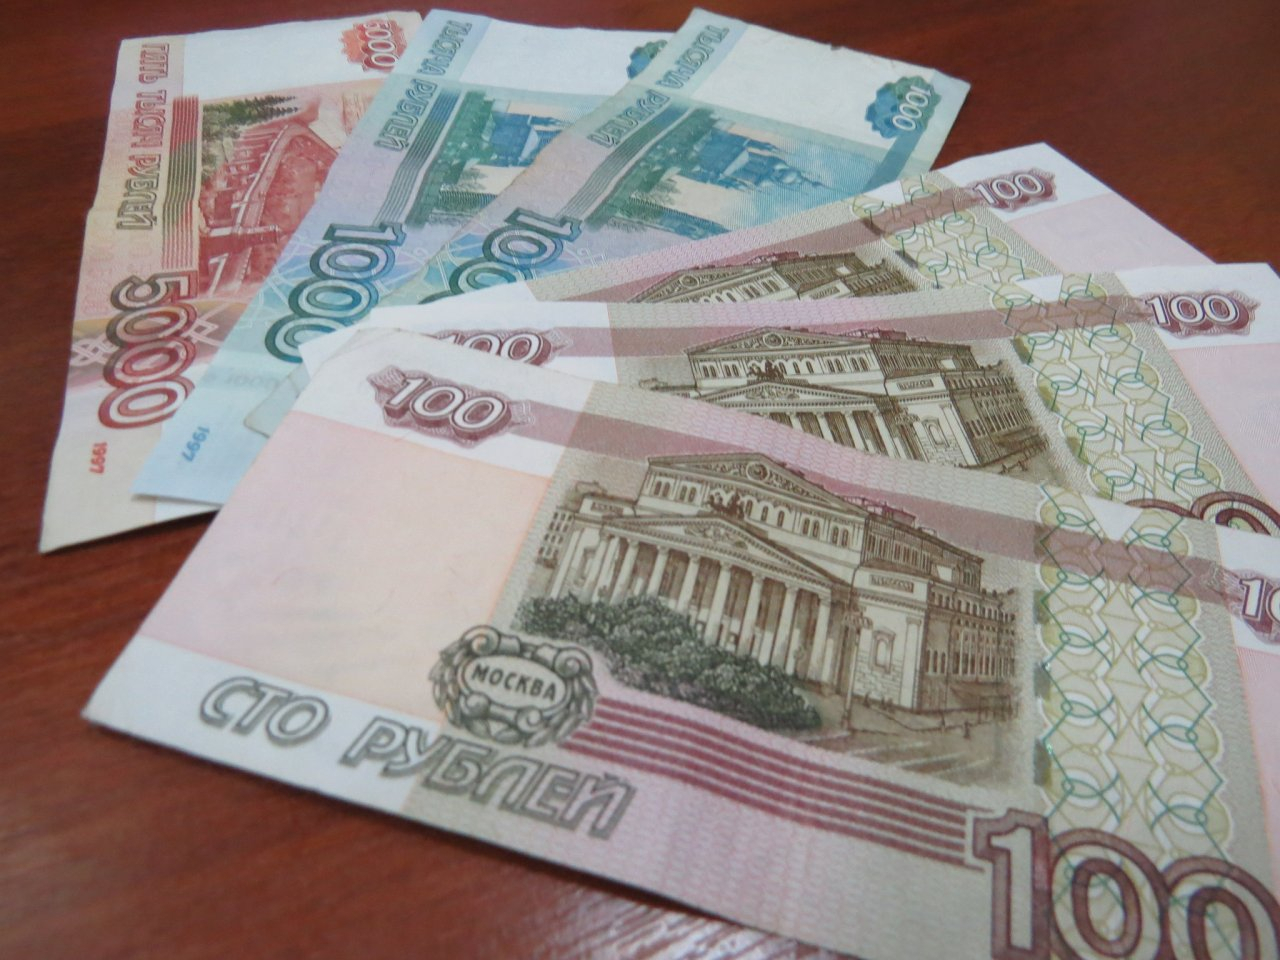 Владимир Путин призвал выплатить пенсионерам по десять тысяч рублей